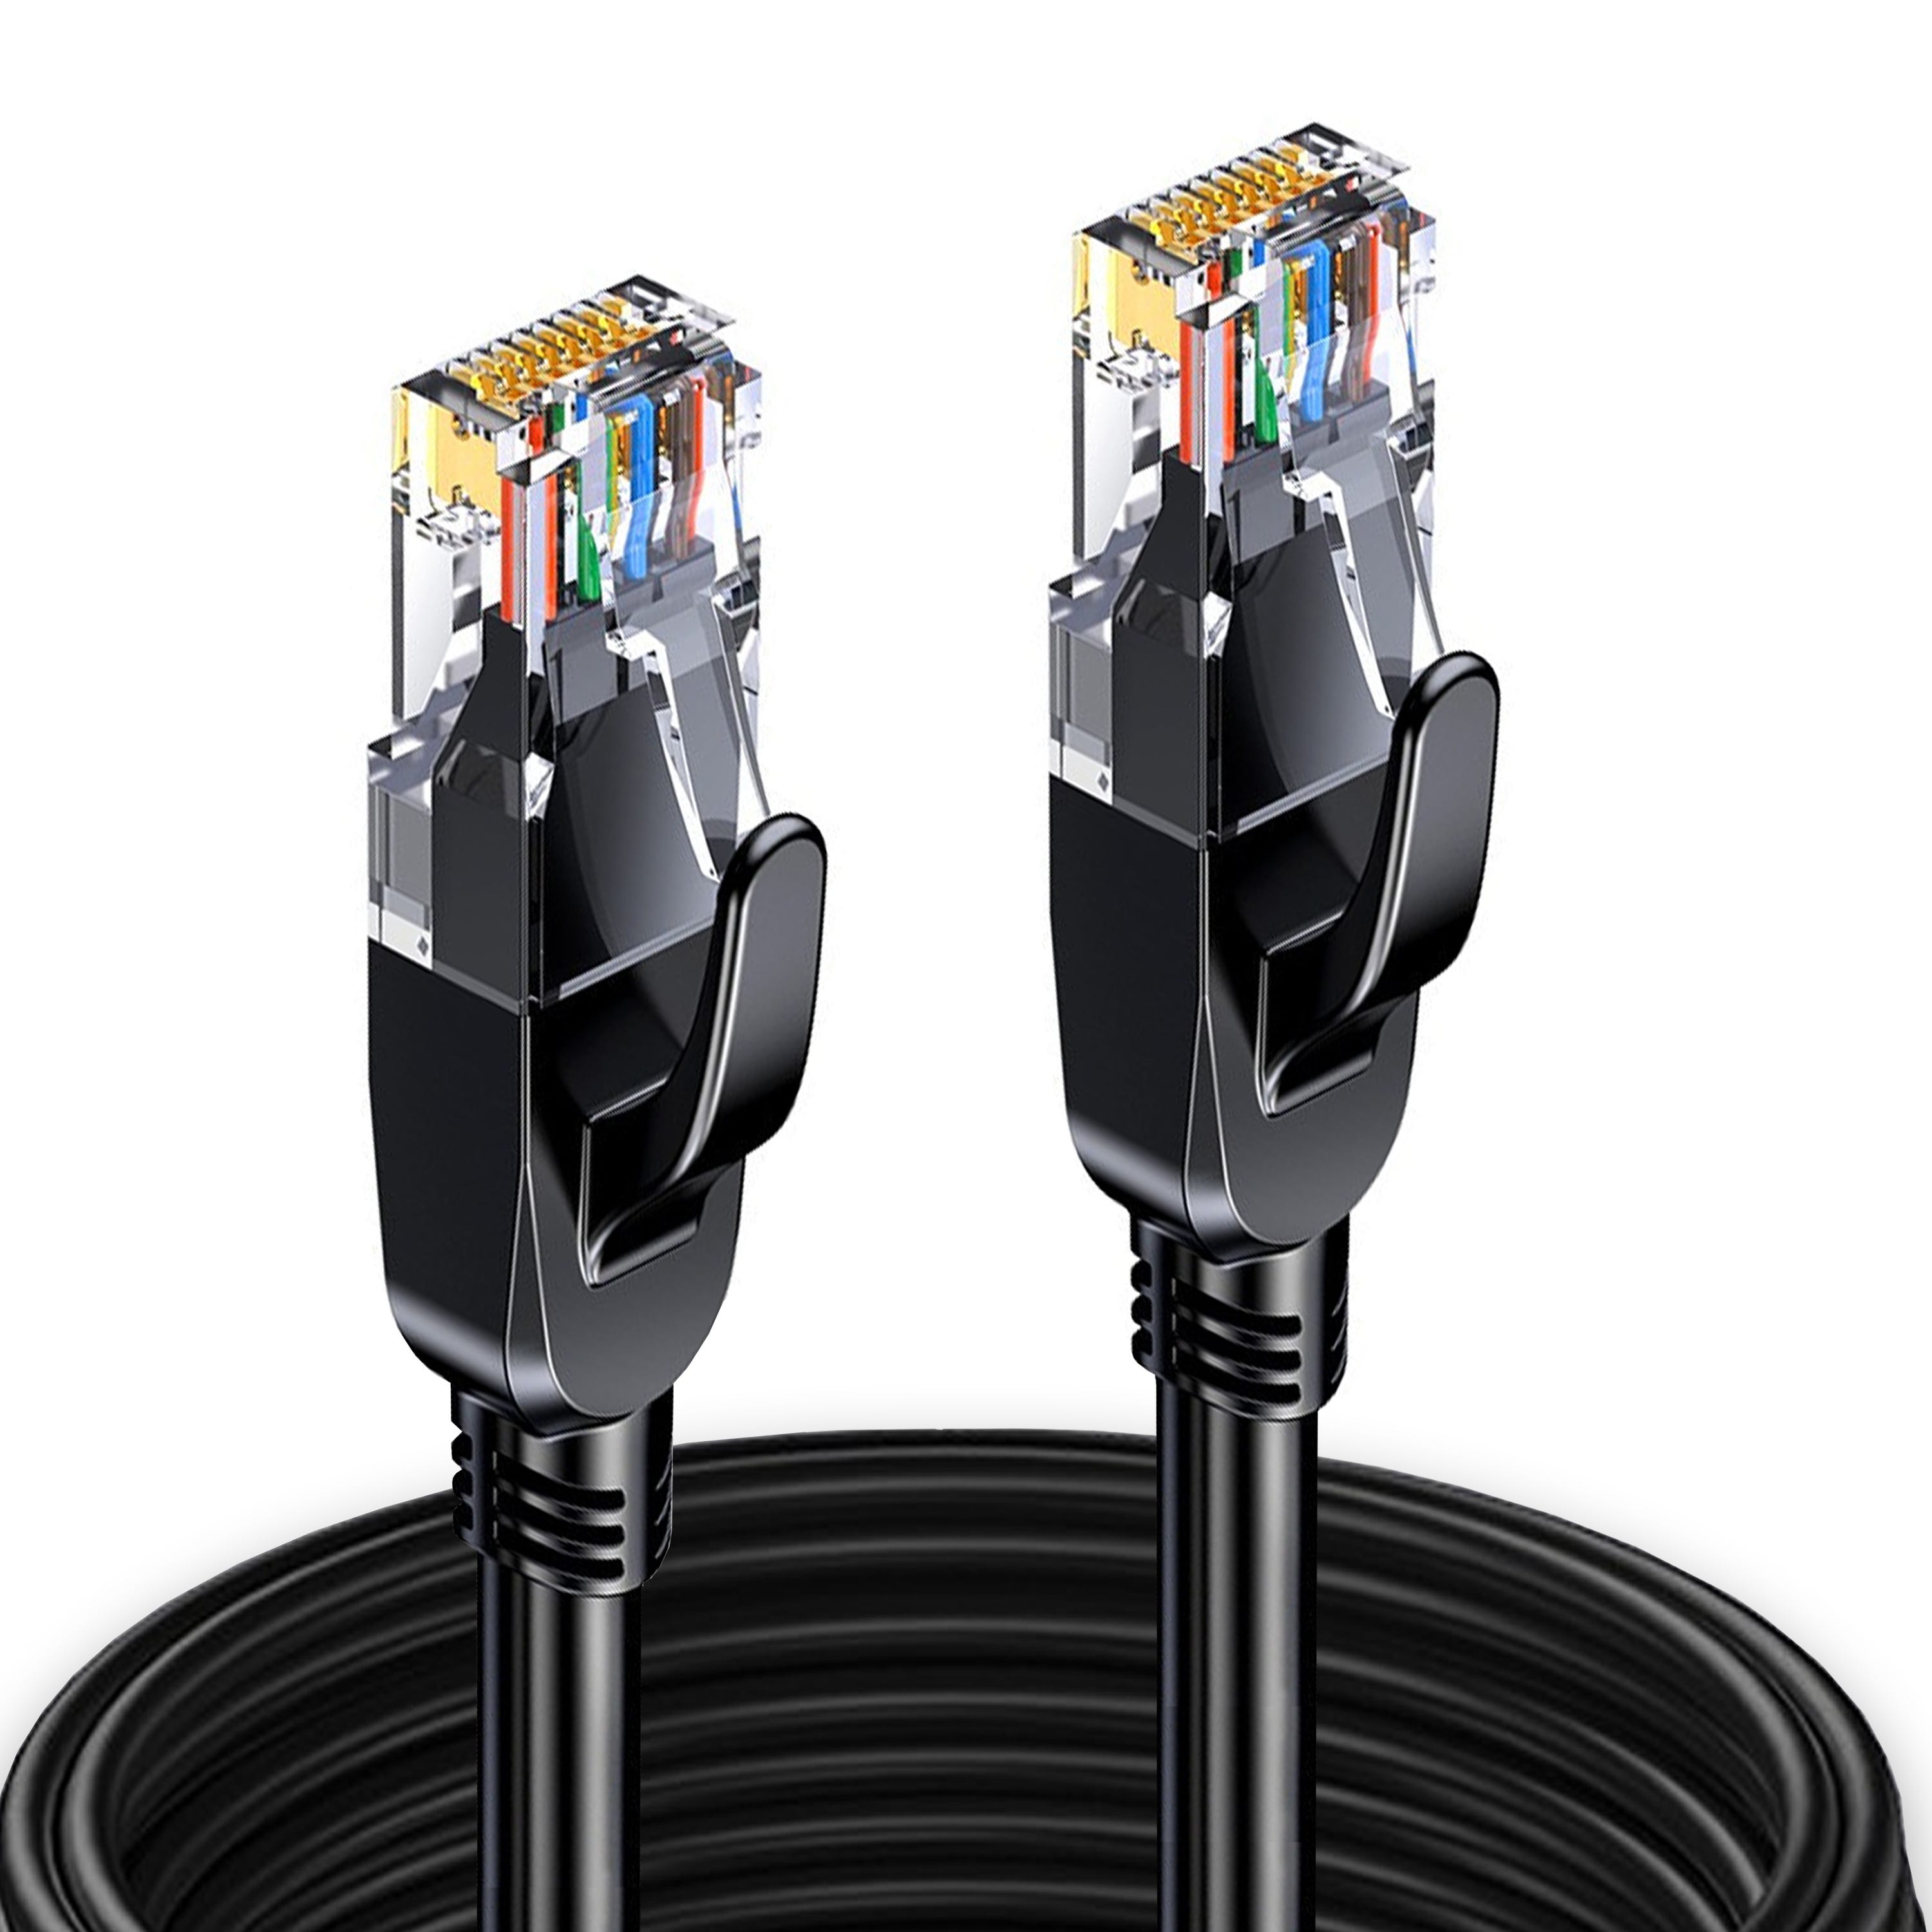 Elfcam® - 20m Cable Reseau Ethernet RJ45 Cat 7, Paire Torsadee